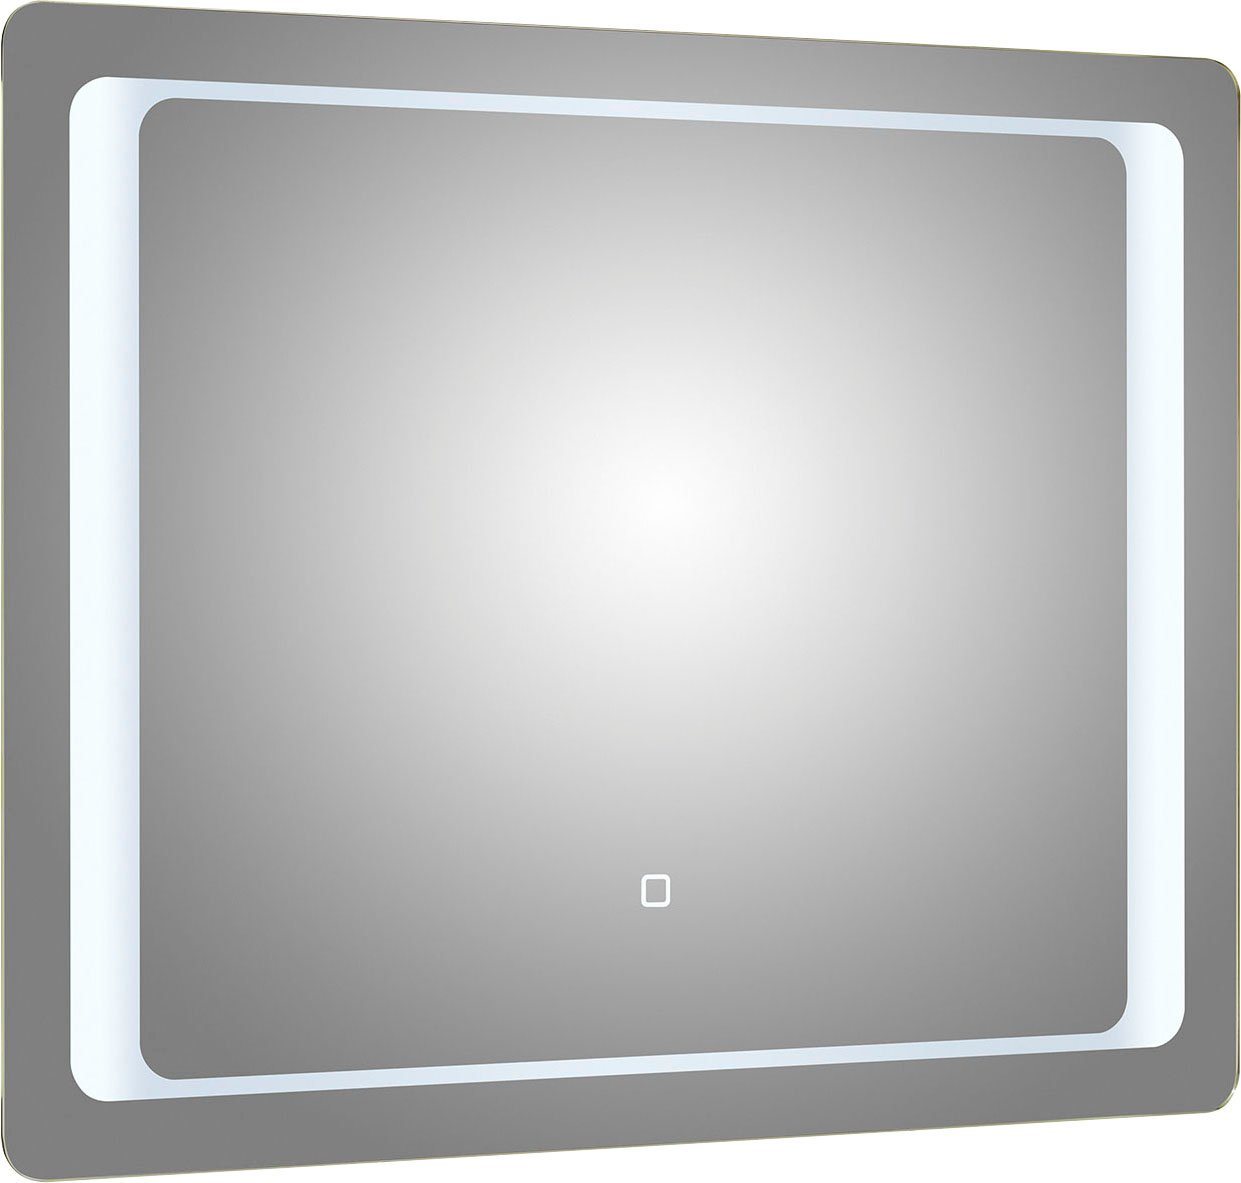 Saphir Badspiegel Quickset Spiegel inkl. LED-Beleuchtung und Touchsensor, 90 cm breit, Flächenspiegel rechteckig, 12V LED, 20 Watt, Wandspiegel von Saphir